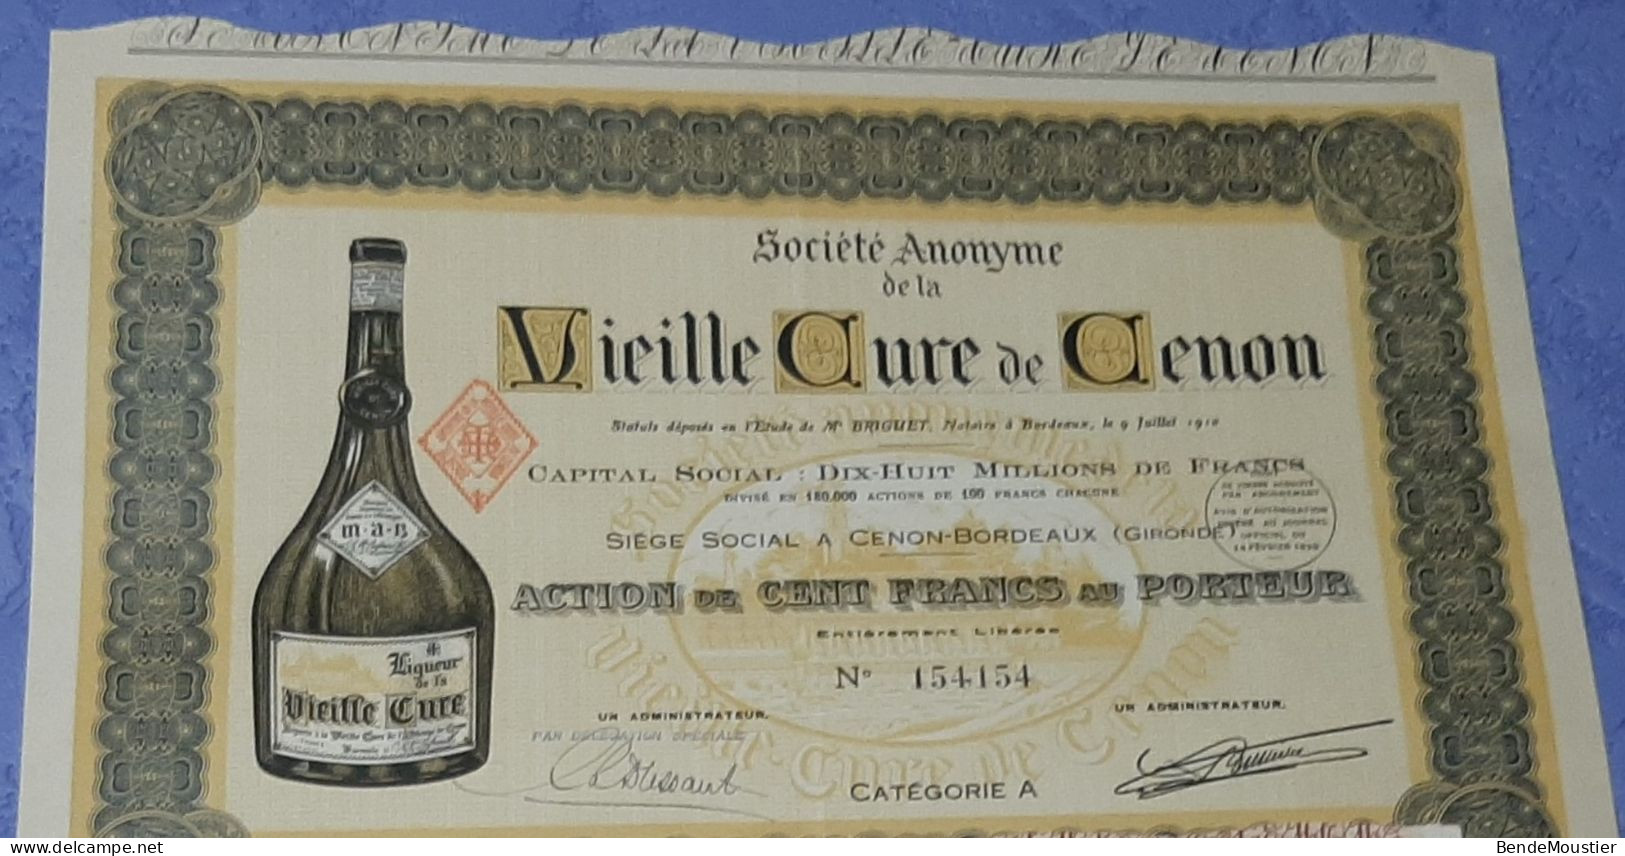 Vieille Cure De Cenon - Action De 2500 Frs - Action De 100 Frs Au Porteur - Cenon-Bordeaux - Gironde 1910 & 1952. - Landbouw